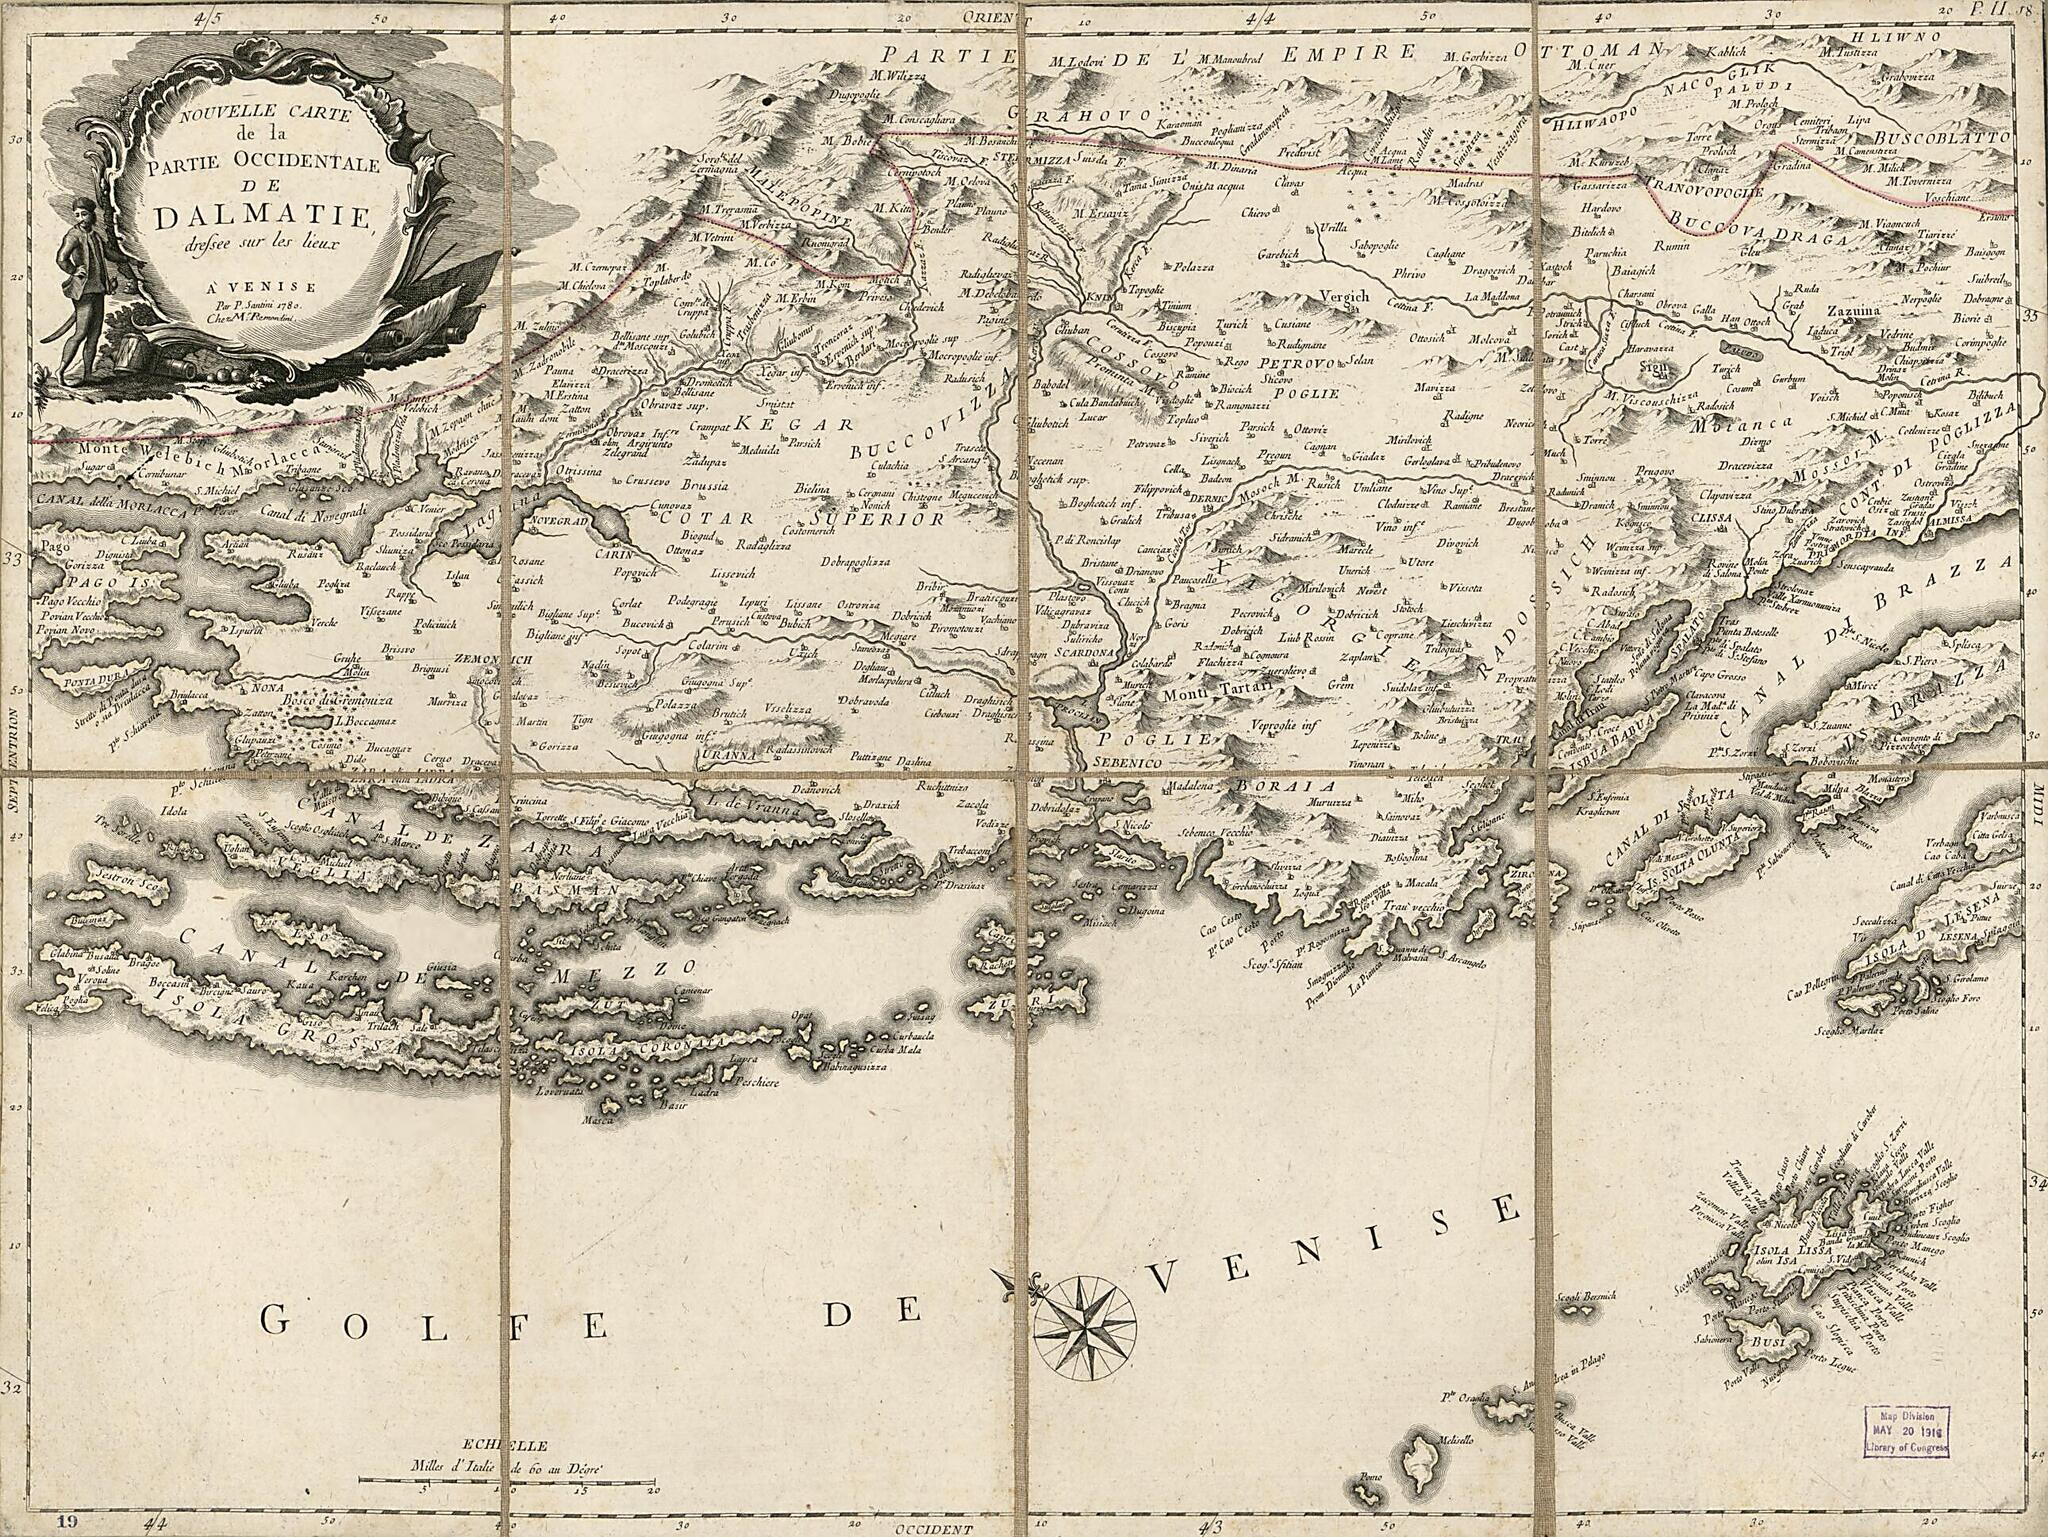 This old map of Nouvelle Carte De La Partie Occidentale De Dalmatie : Dressée Sur Les Lieux from 1780 was created by Giovanni Battista Remondini, P. Santini in 1780